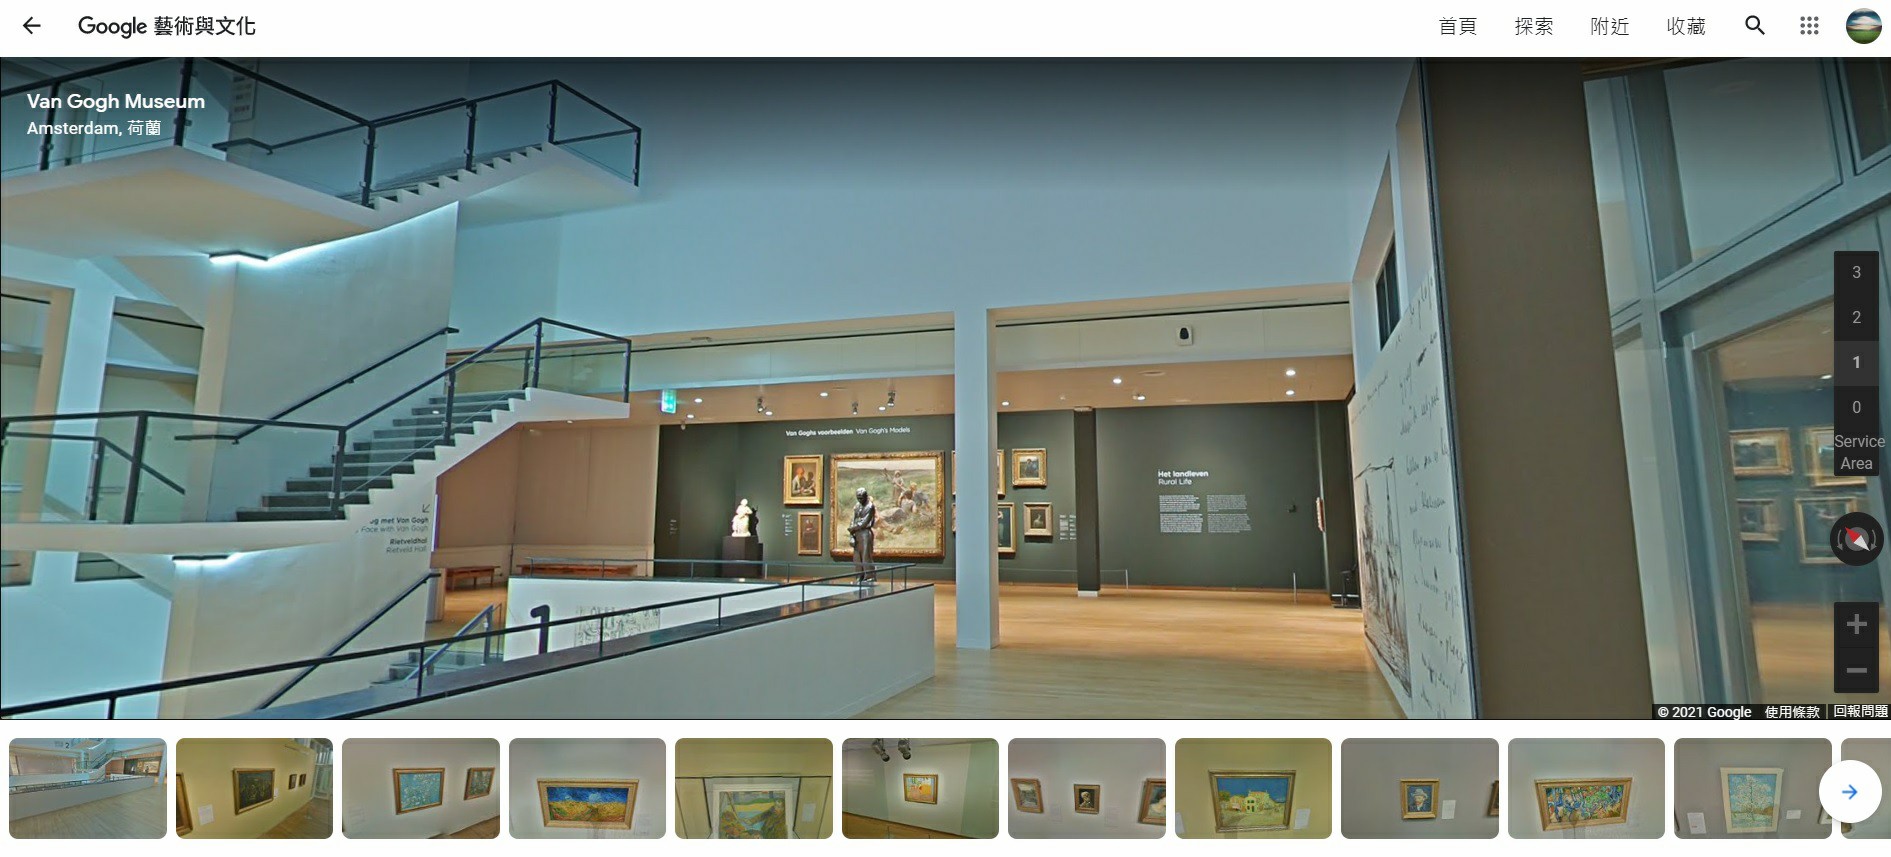 荷蘭阿姆斯特丹梵谷美術館,梵谷美術館,梵谷博物館,阿姆斯特丹,Google Arts & Culture,Google 藝術與文化,虛擬實境美術館,線上博物館,線上展覽,線上美術館